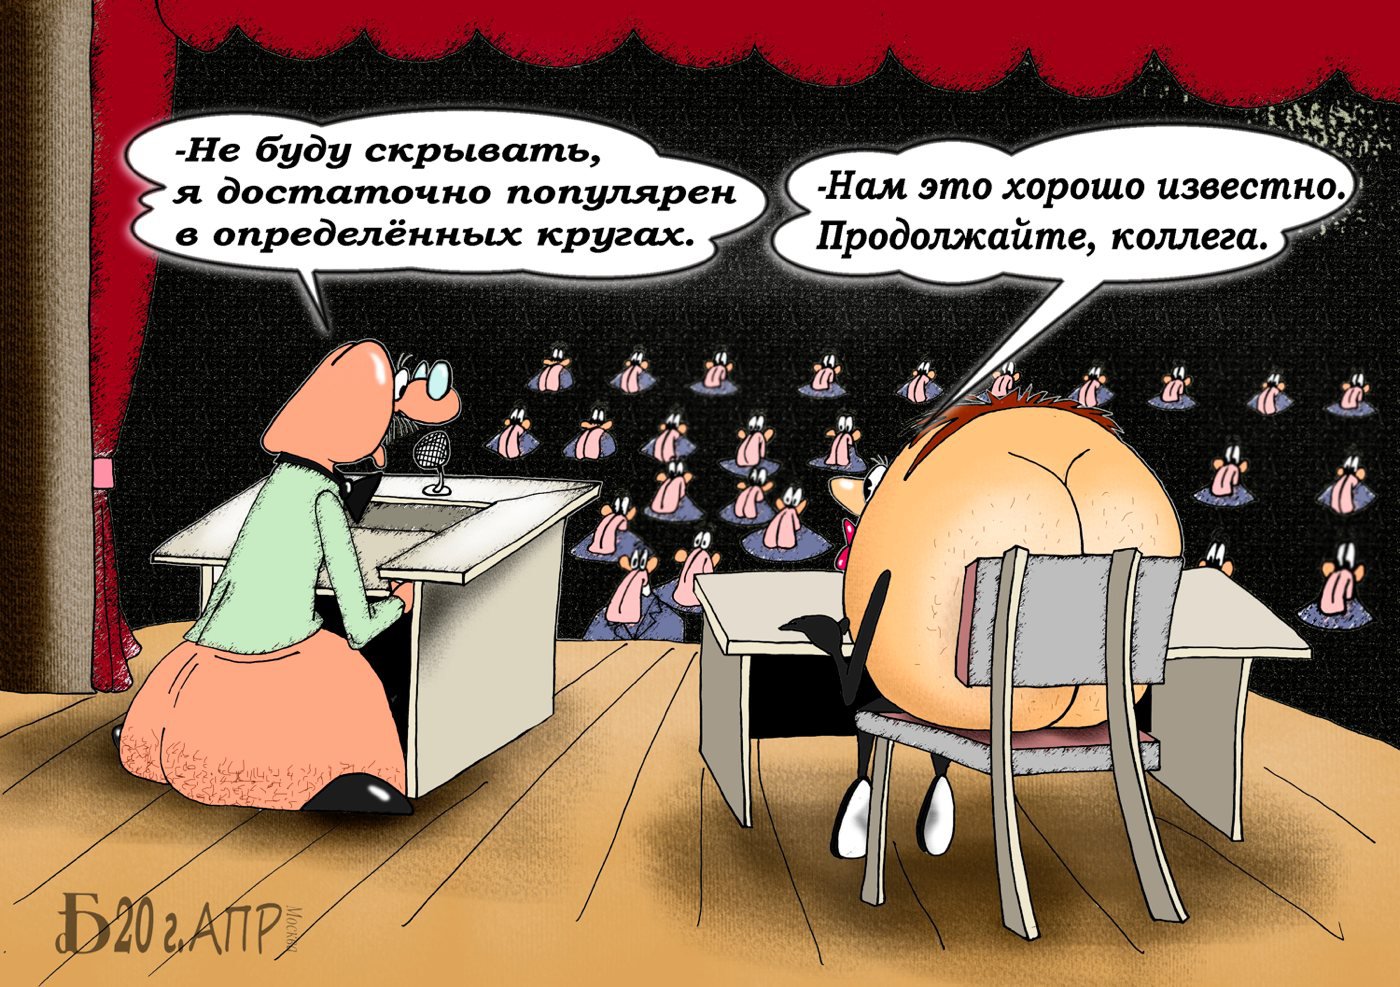 Карикатура "Про ПОПУлярность в кругах", Борис Демин